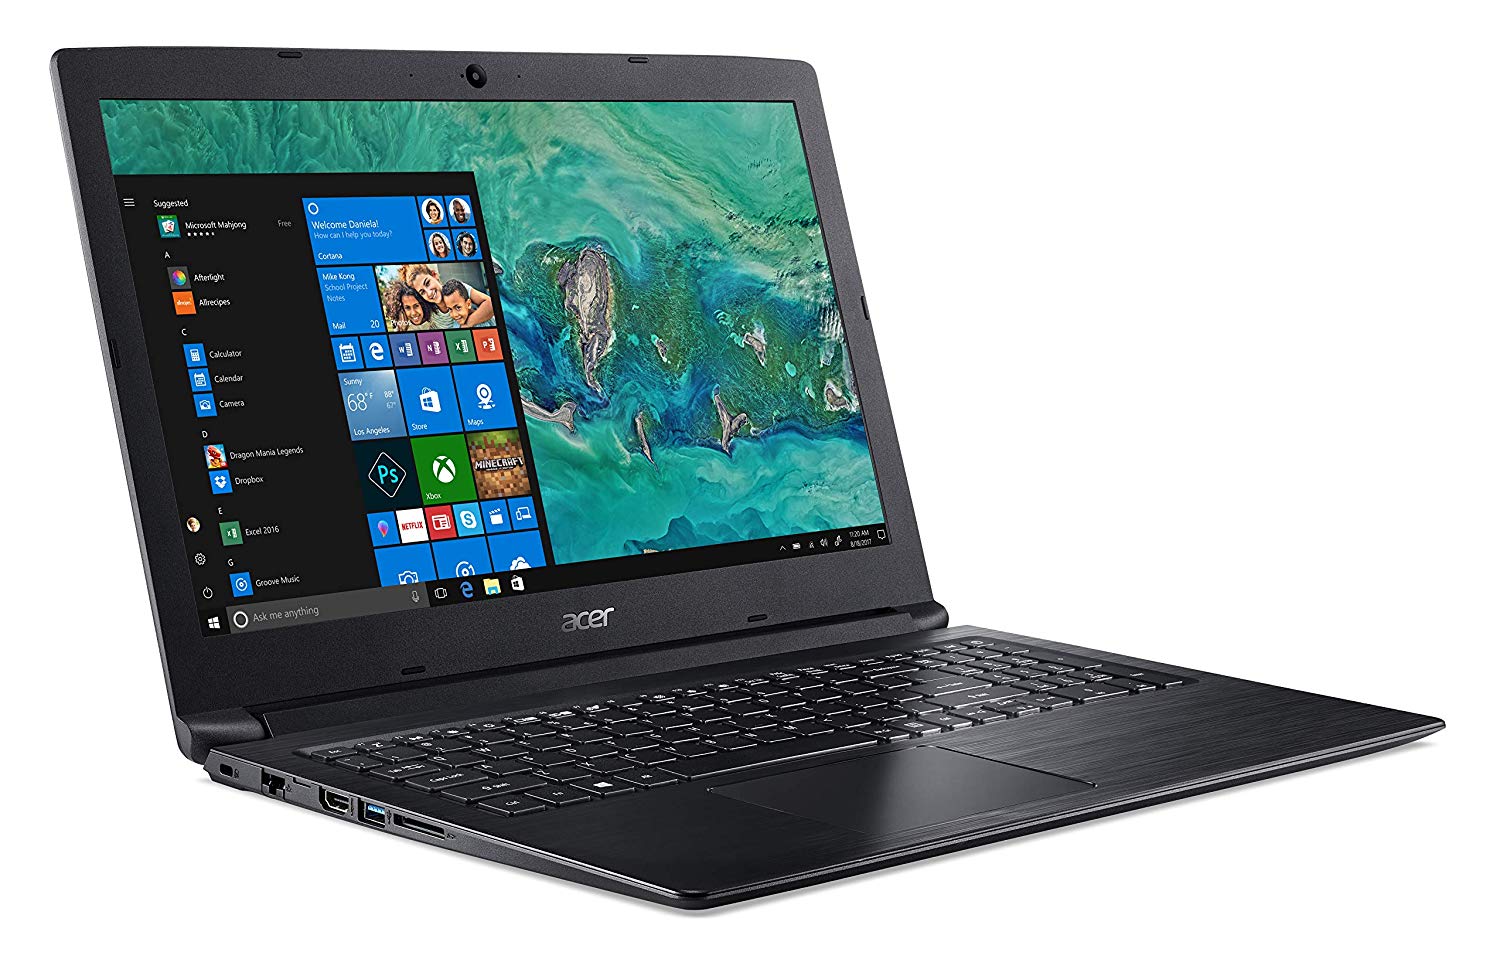 Acer A315-53G-522W İ5-7200U 4GB 1TB HDD GeForce® MX130 2GB 15.6’’